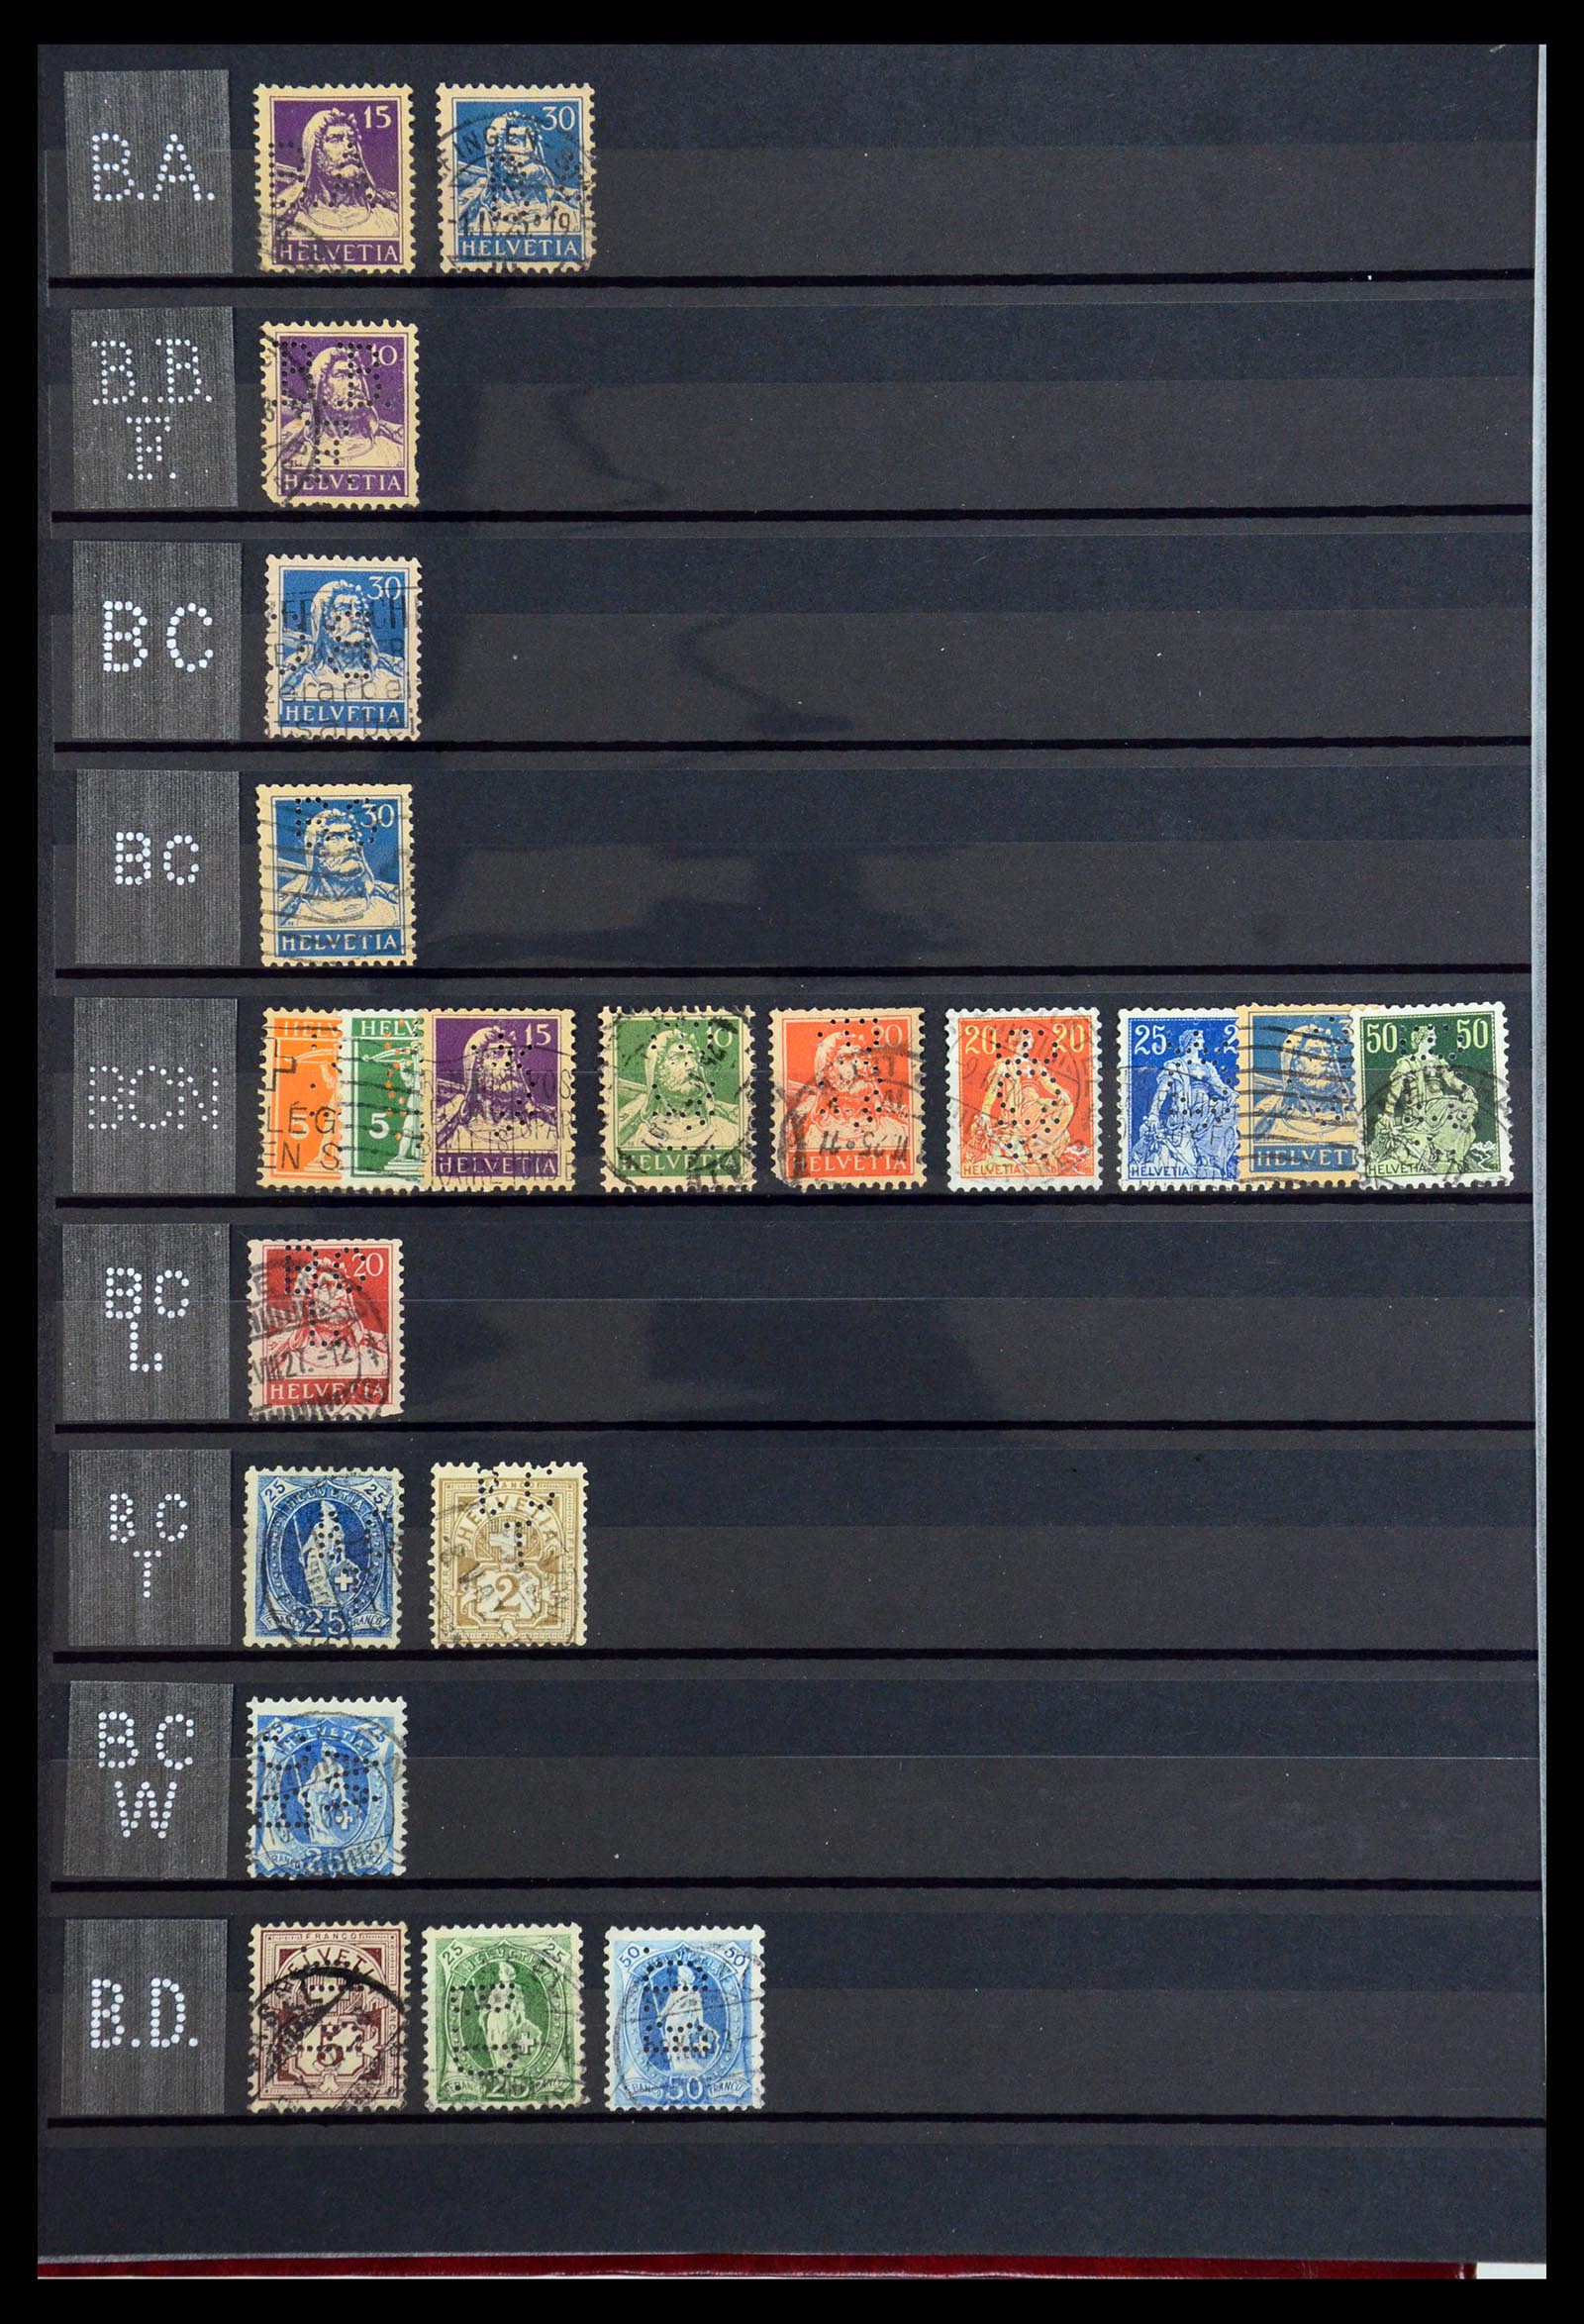 36372 004 - Stamp collection 36372 Switzerland perfins 1880-1960.